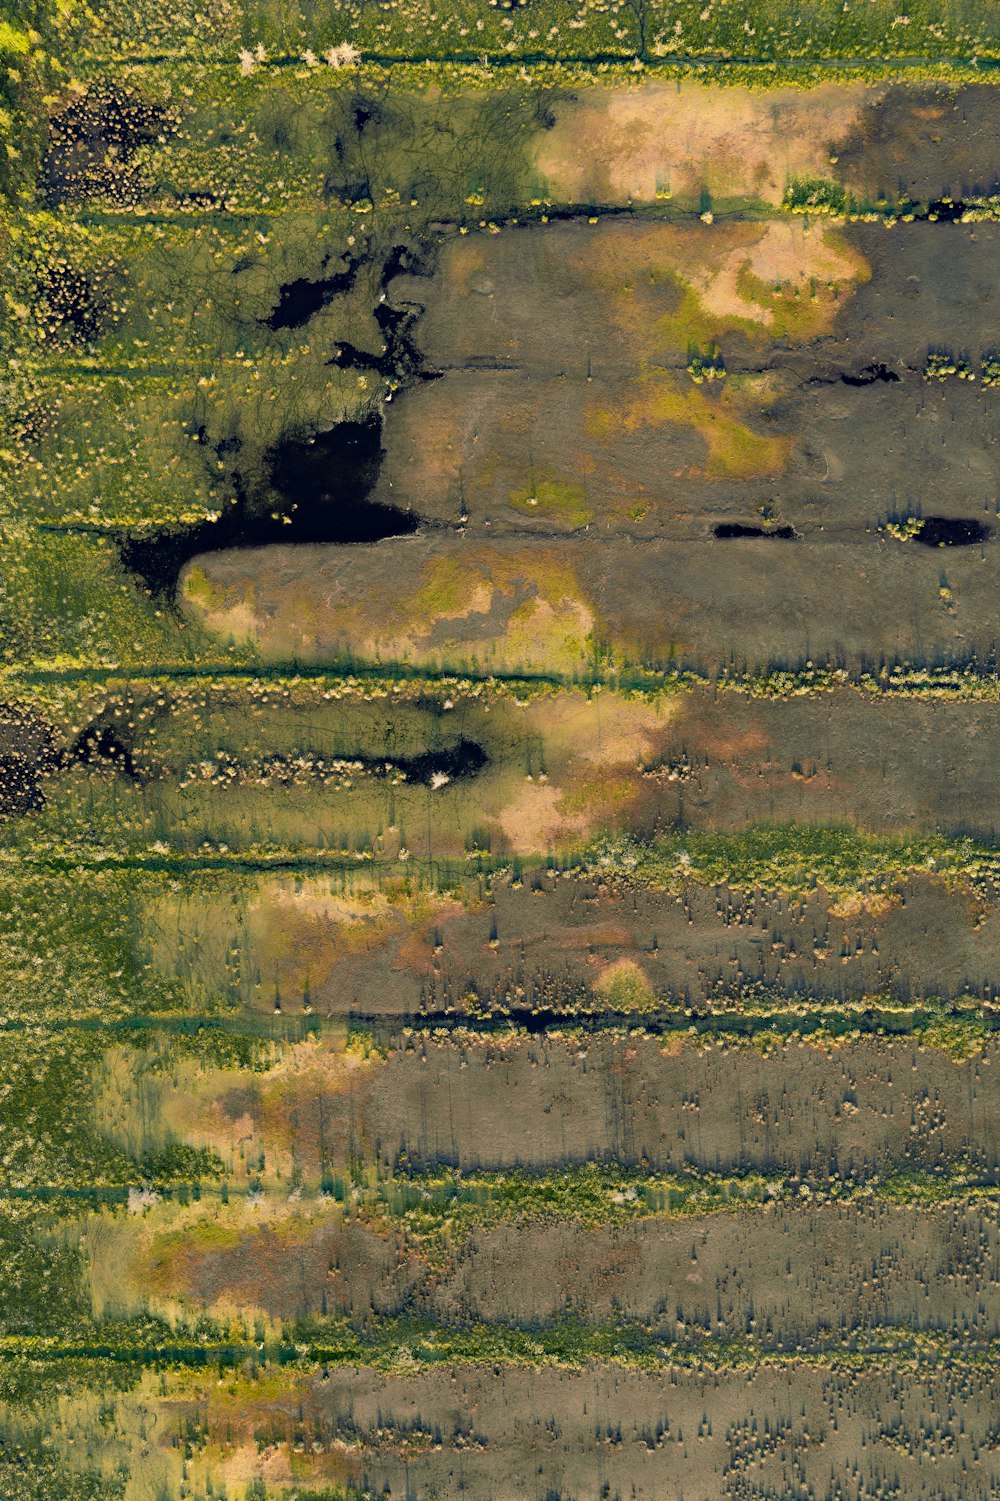 Una vista aérea de un campo verde con árboles